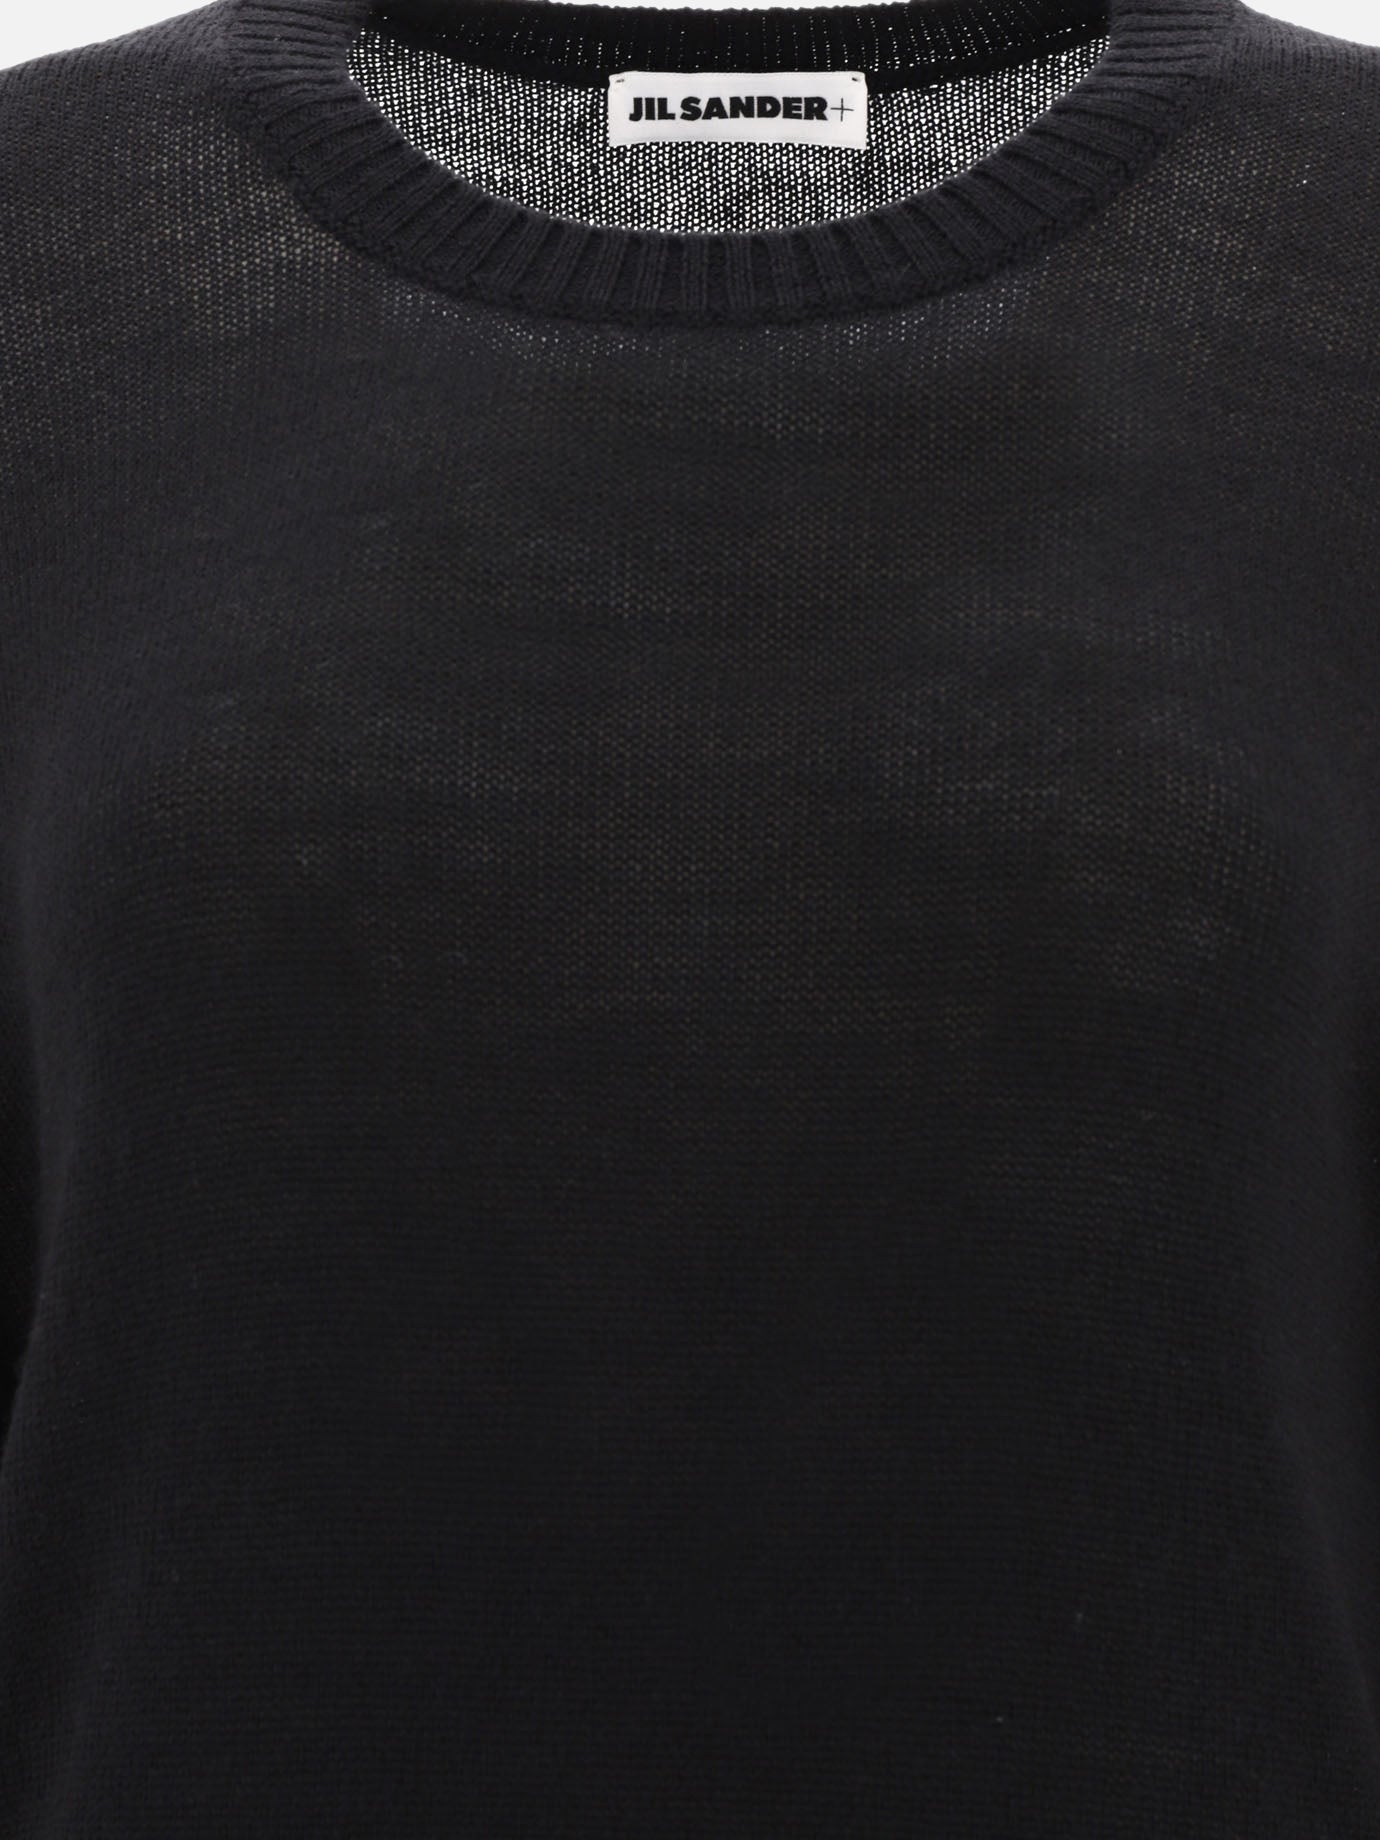 Ultrafine wool sweater